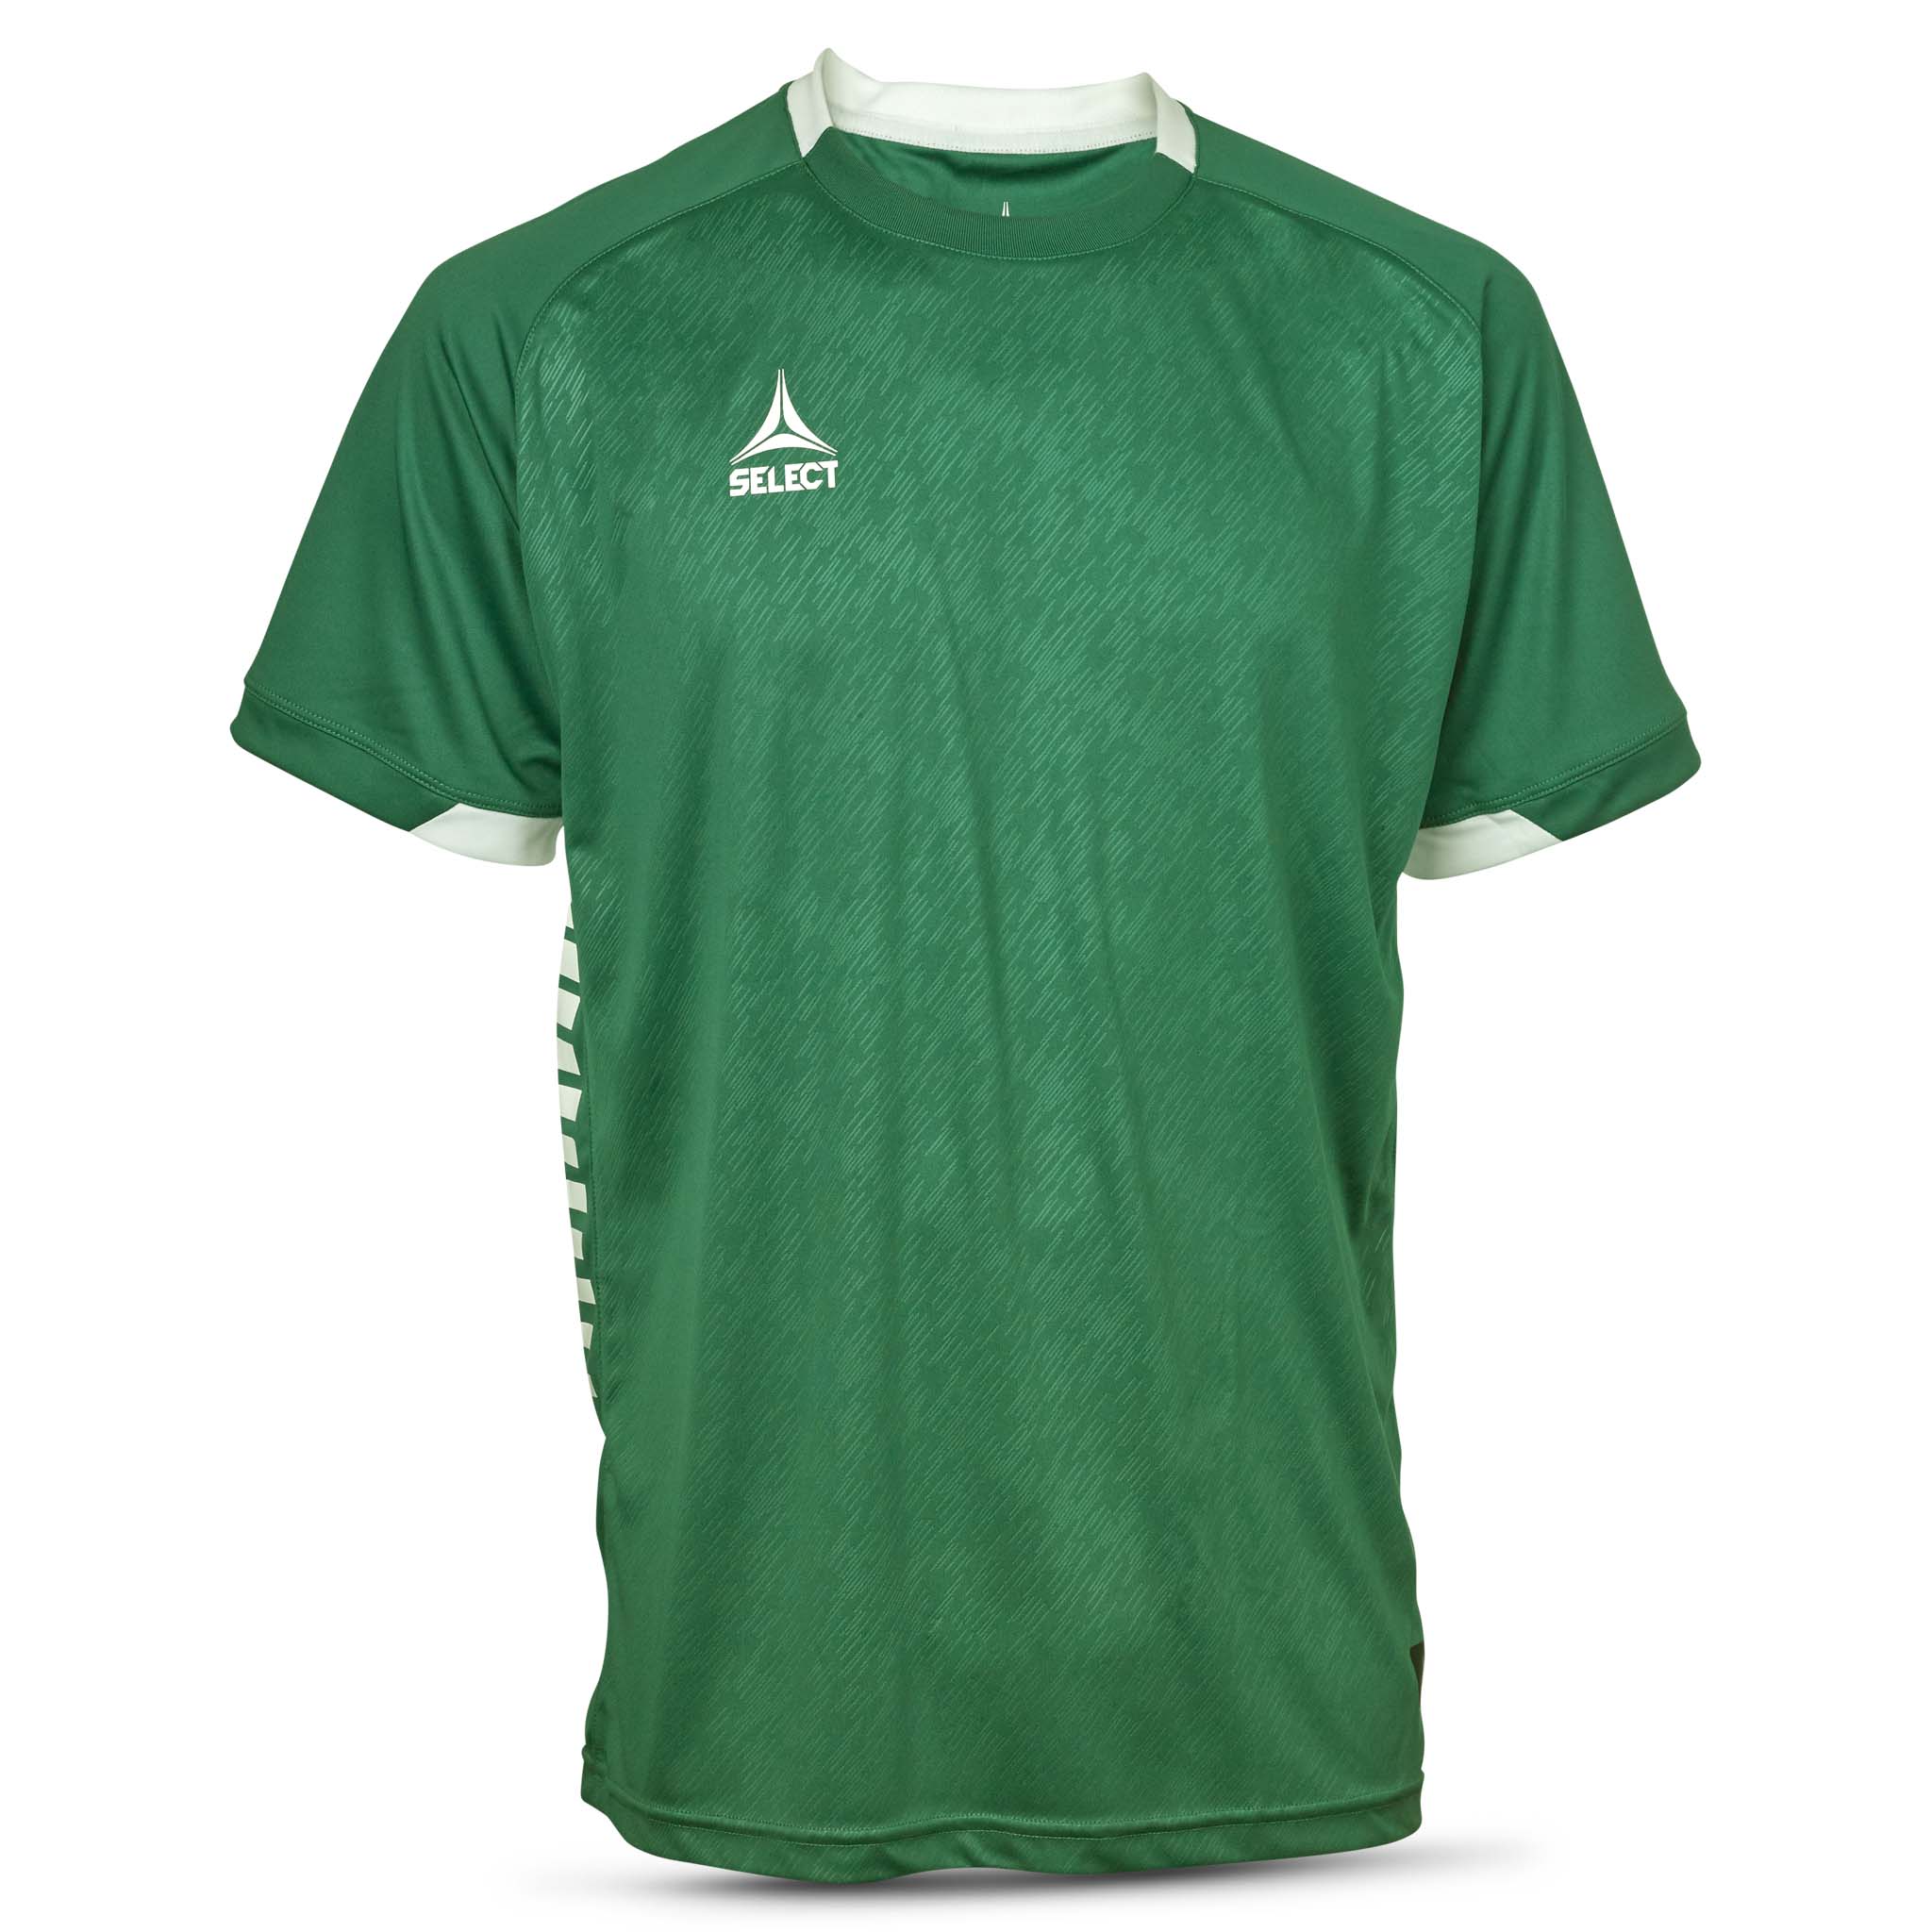 Spain Short Sleeve player shirt - Kids #colour_green